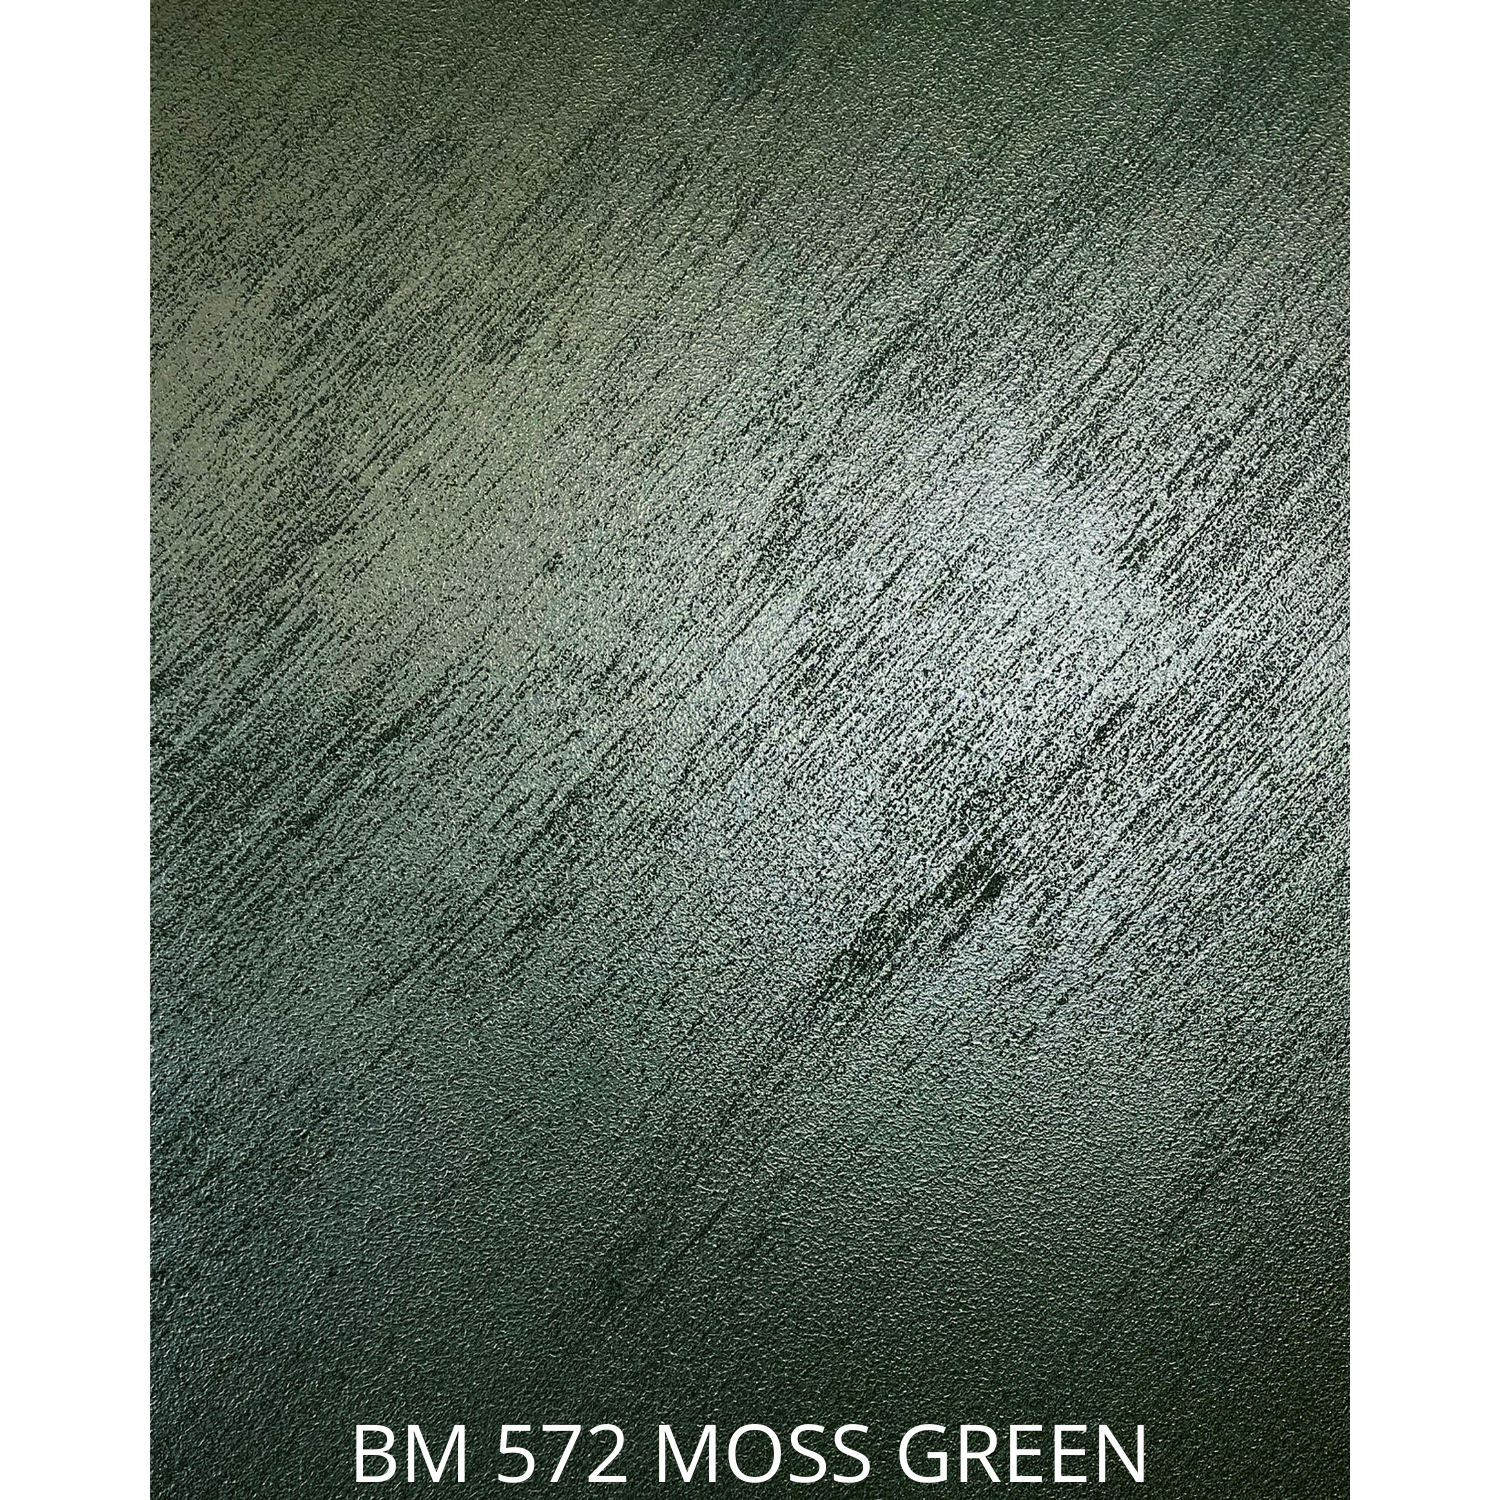 BM 572 MOSS GREEN